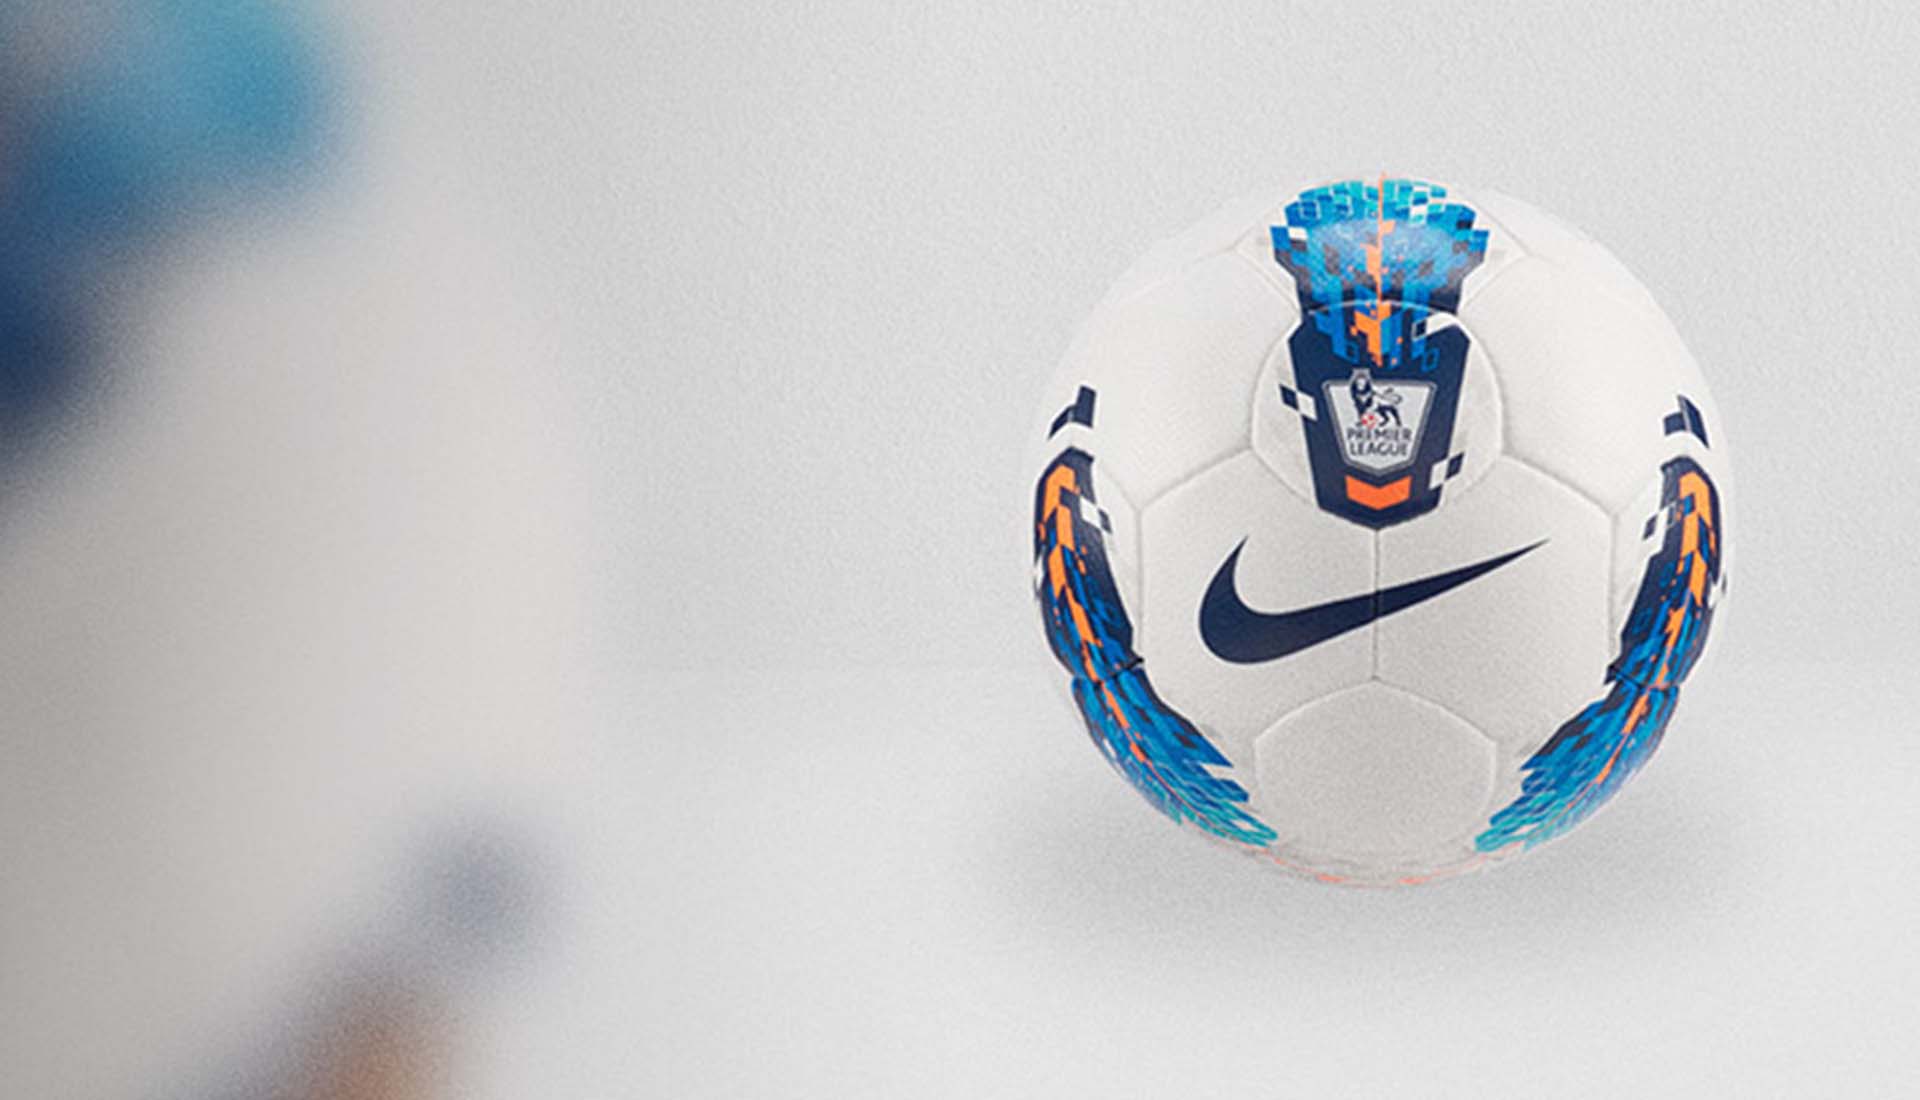 Nike Re Launch The 11 12 Premier League 'Seitiro' Ball